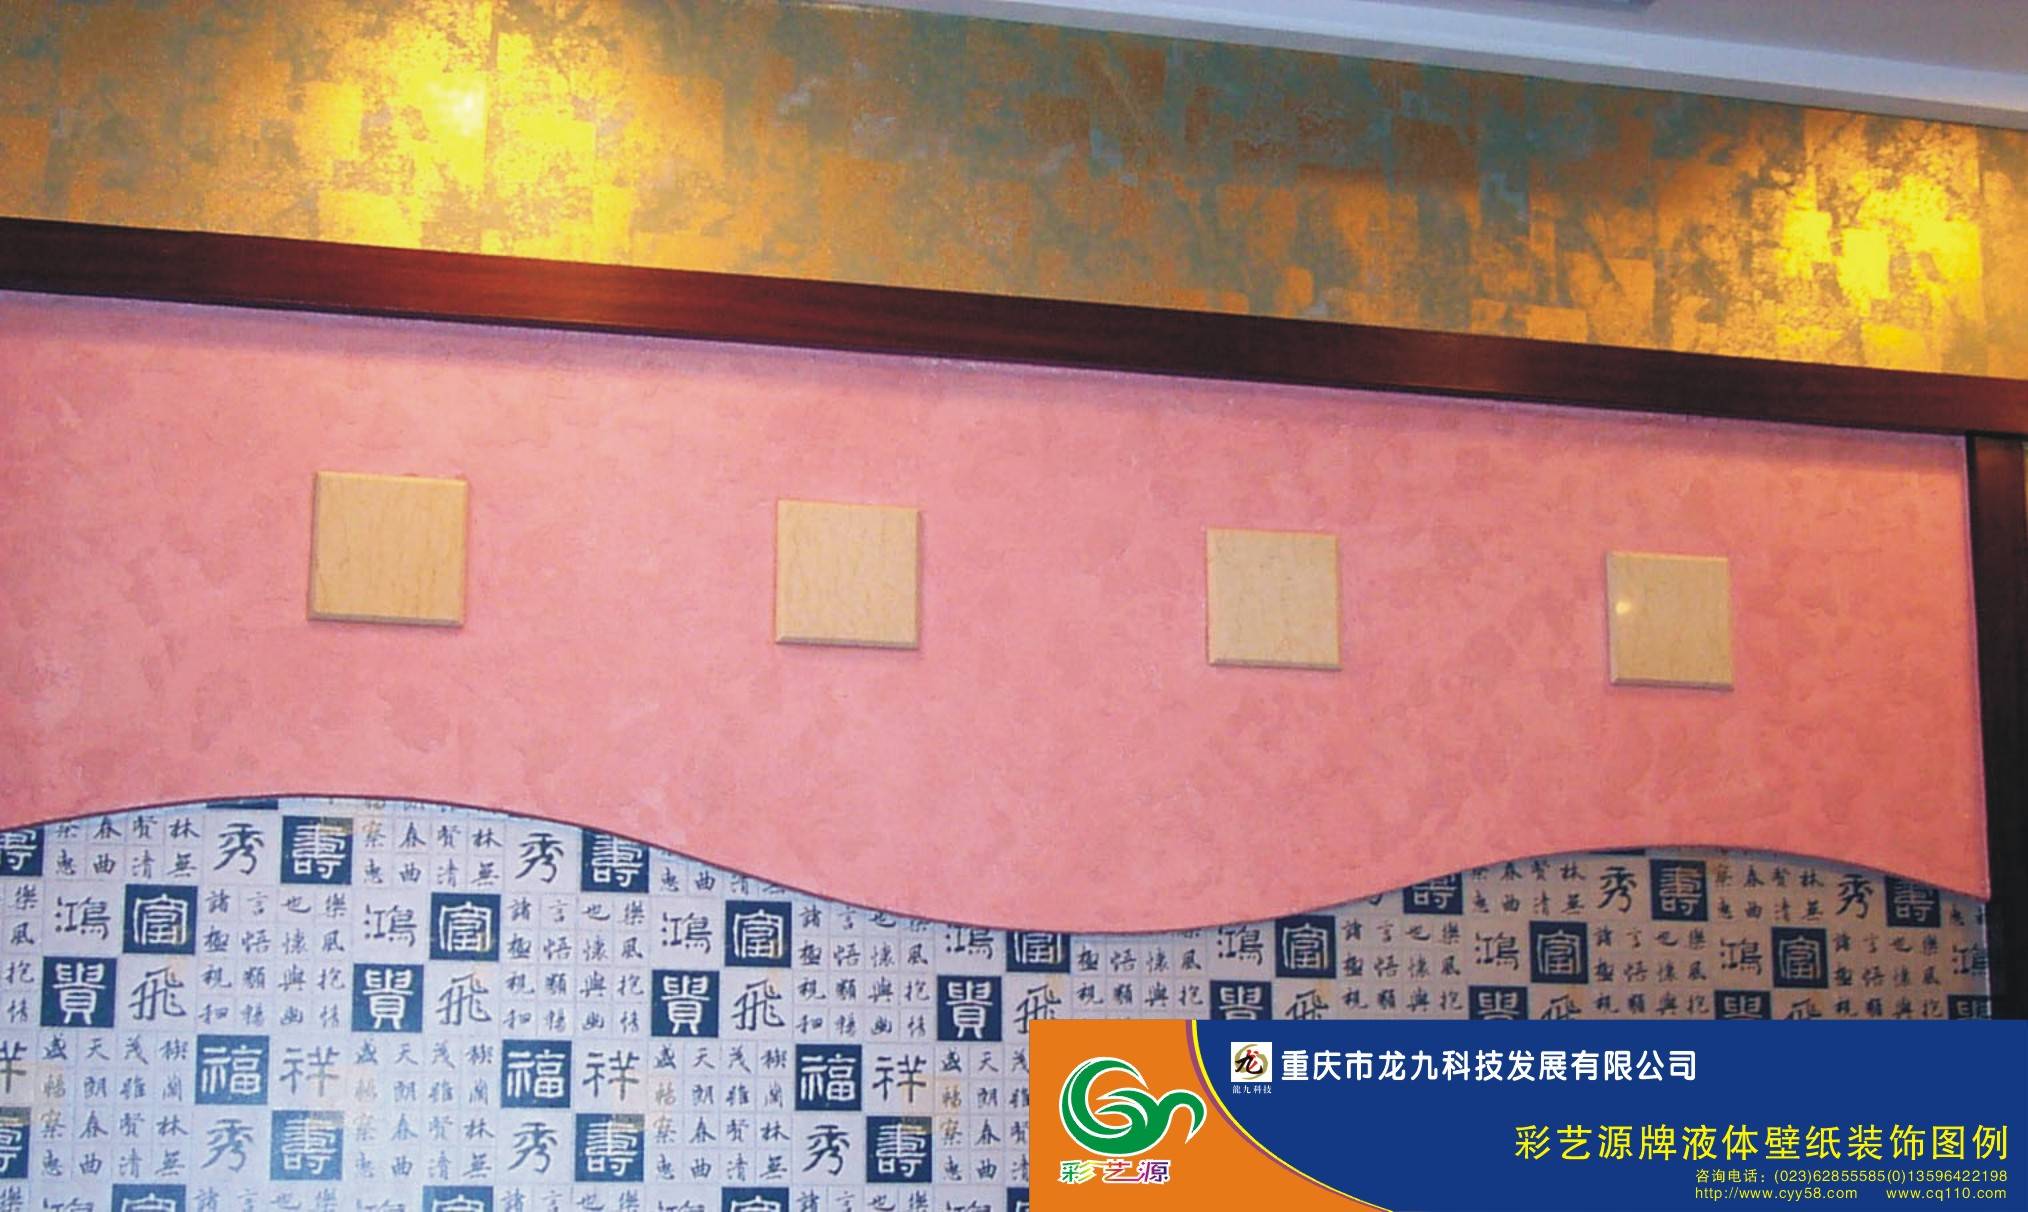 液体壁纸_液体壁纸效果图_液体壁纸施工_中国排行网